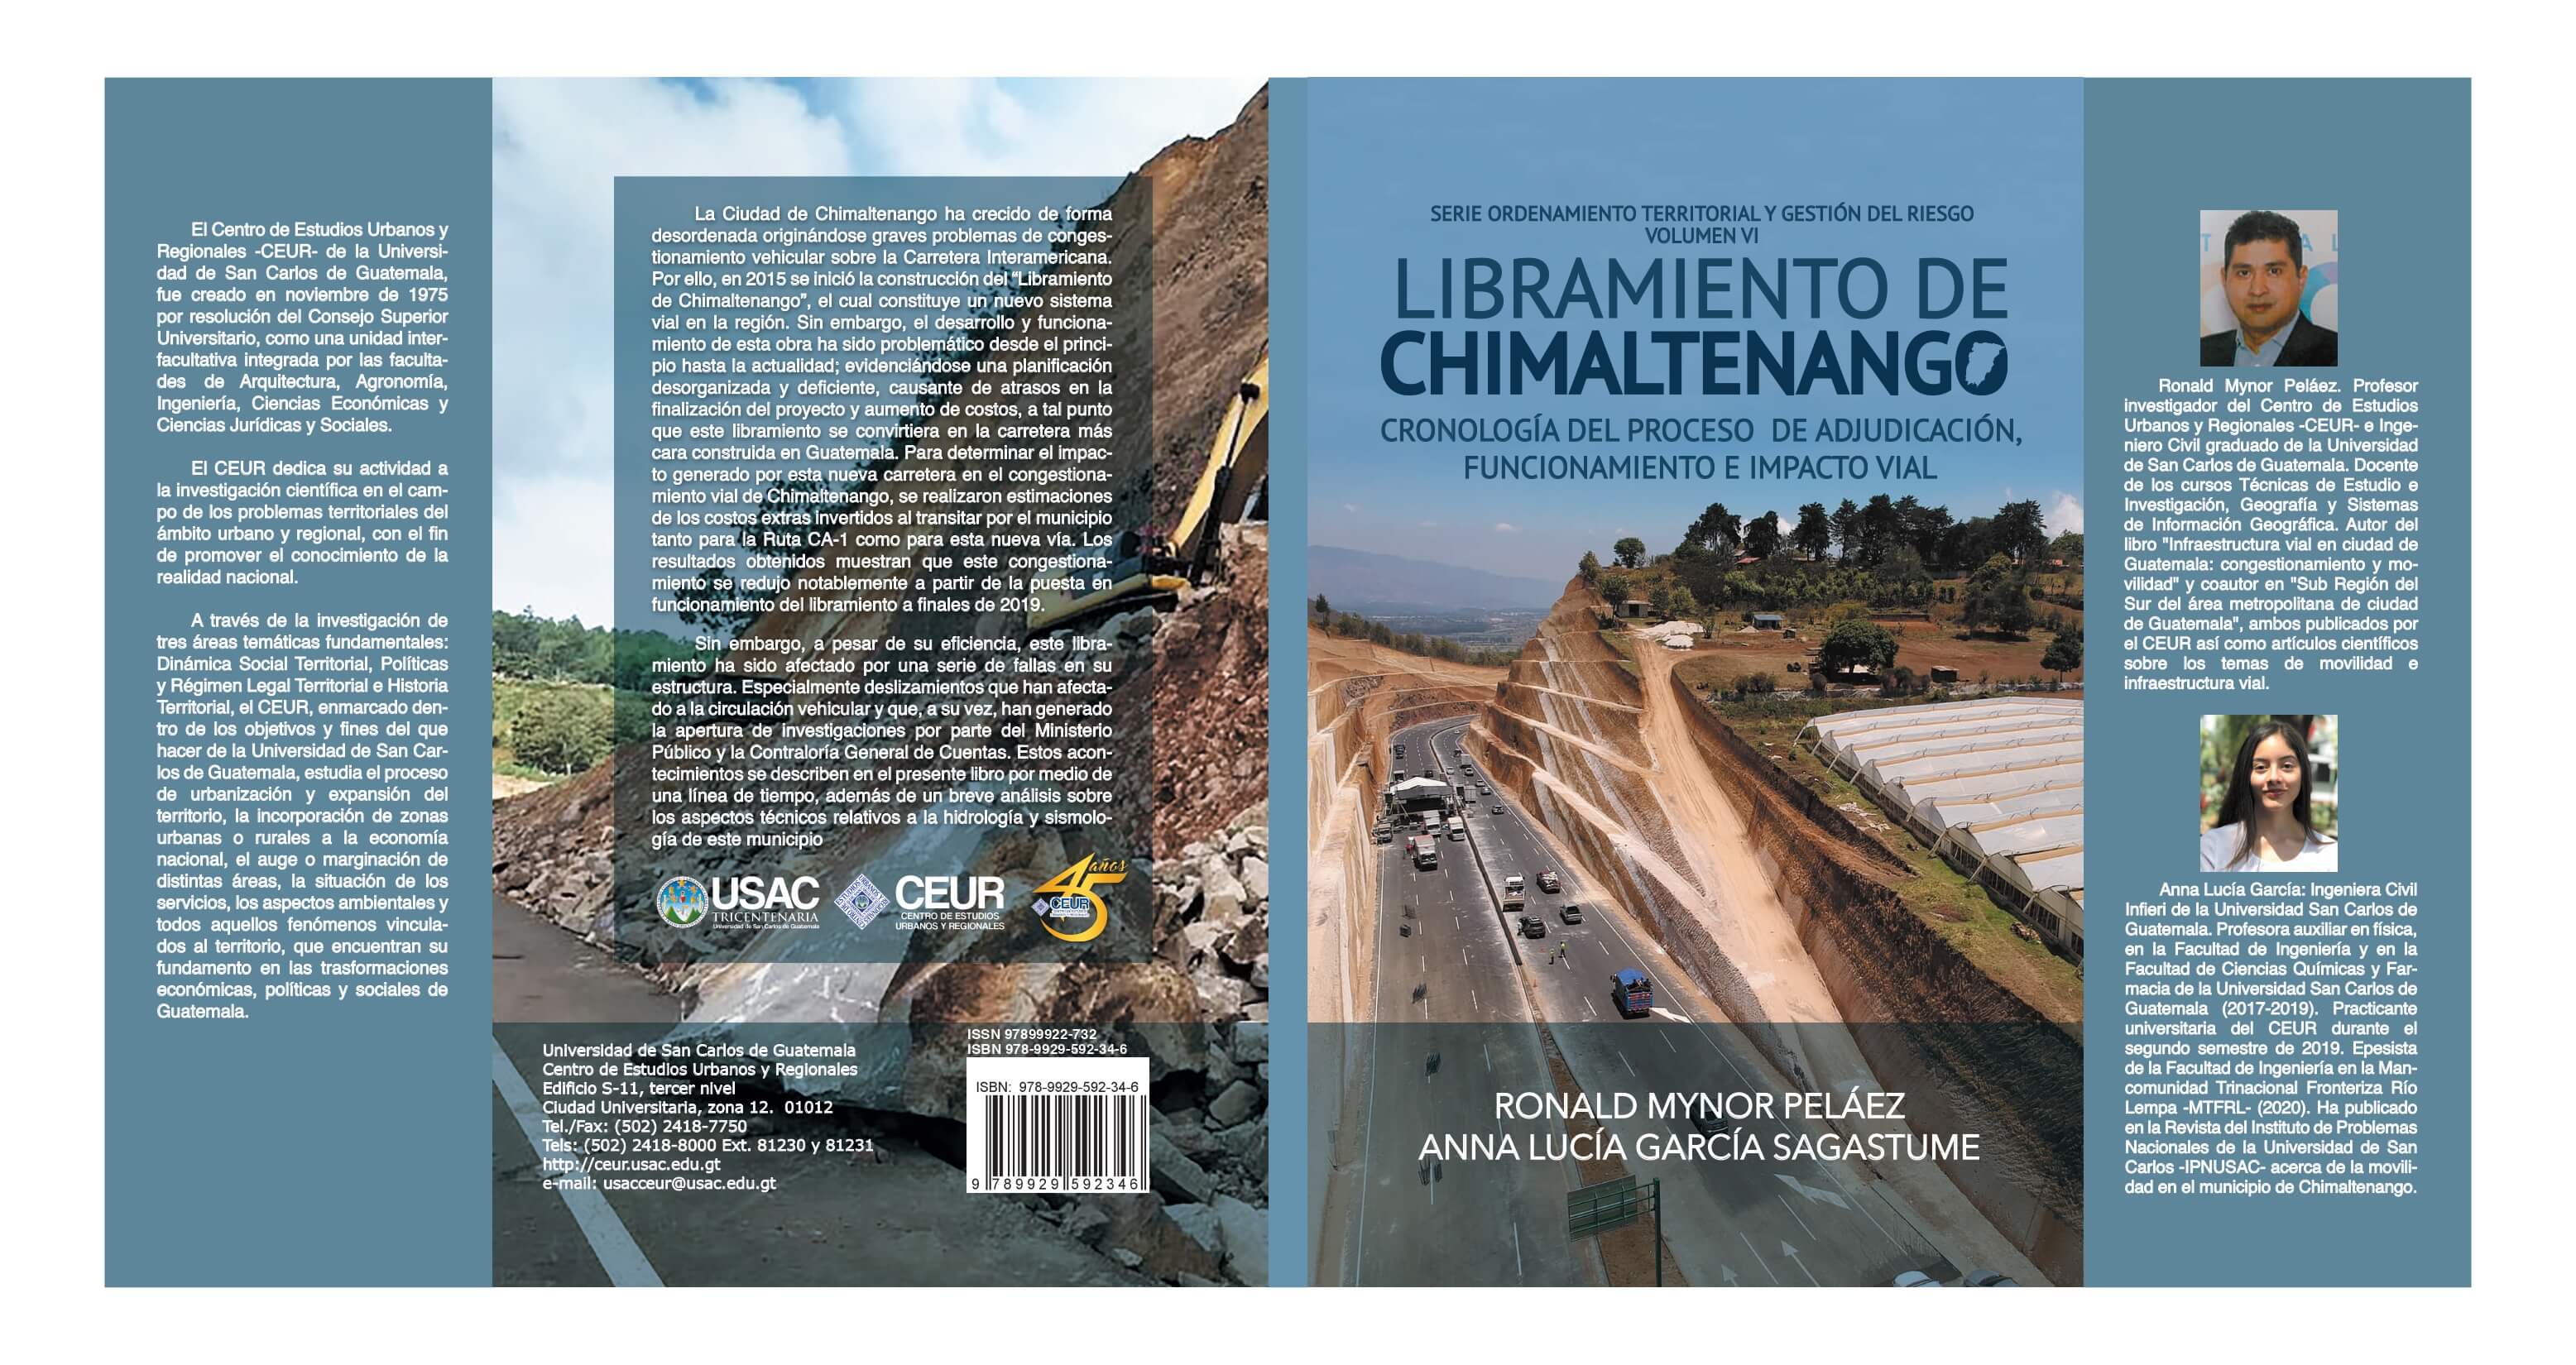 Libramiento de Chimaltenango, cronología del proceso de adjudicación, funcionamiento e impacto vial